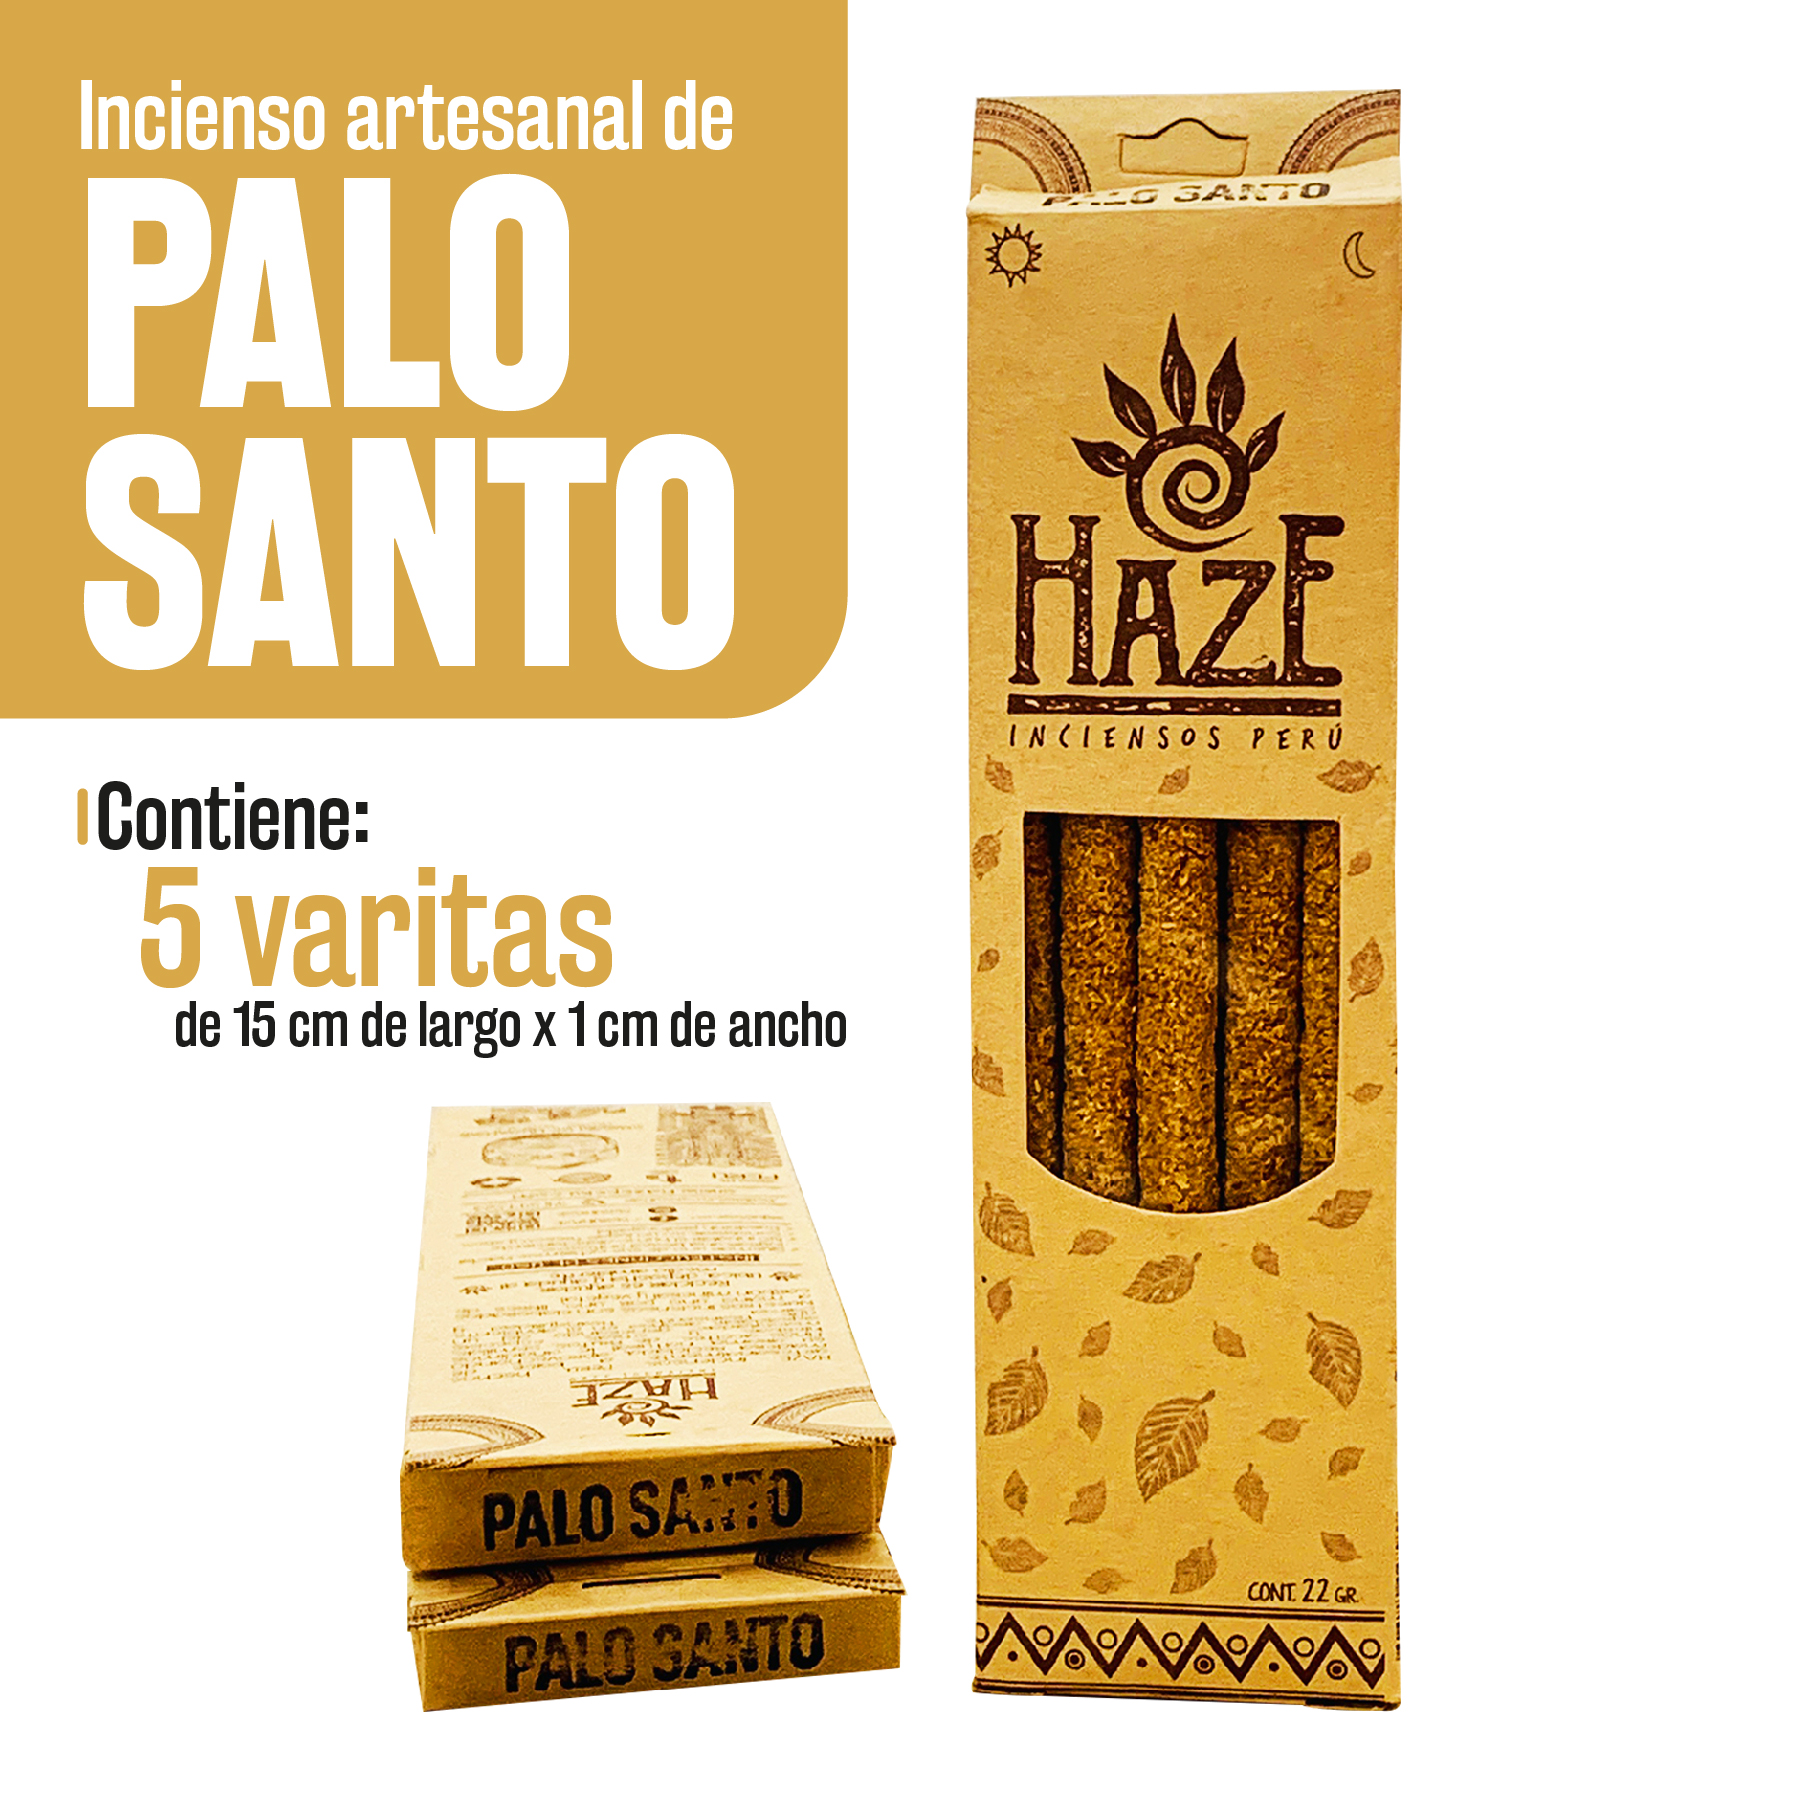 Incienso de Palo Santo: Aroma ancestral - Haze Inciensos Perú